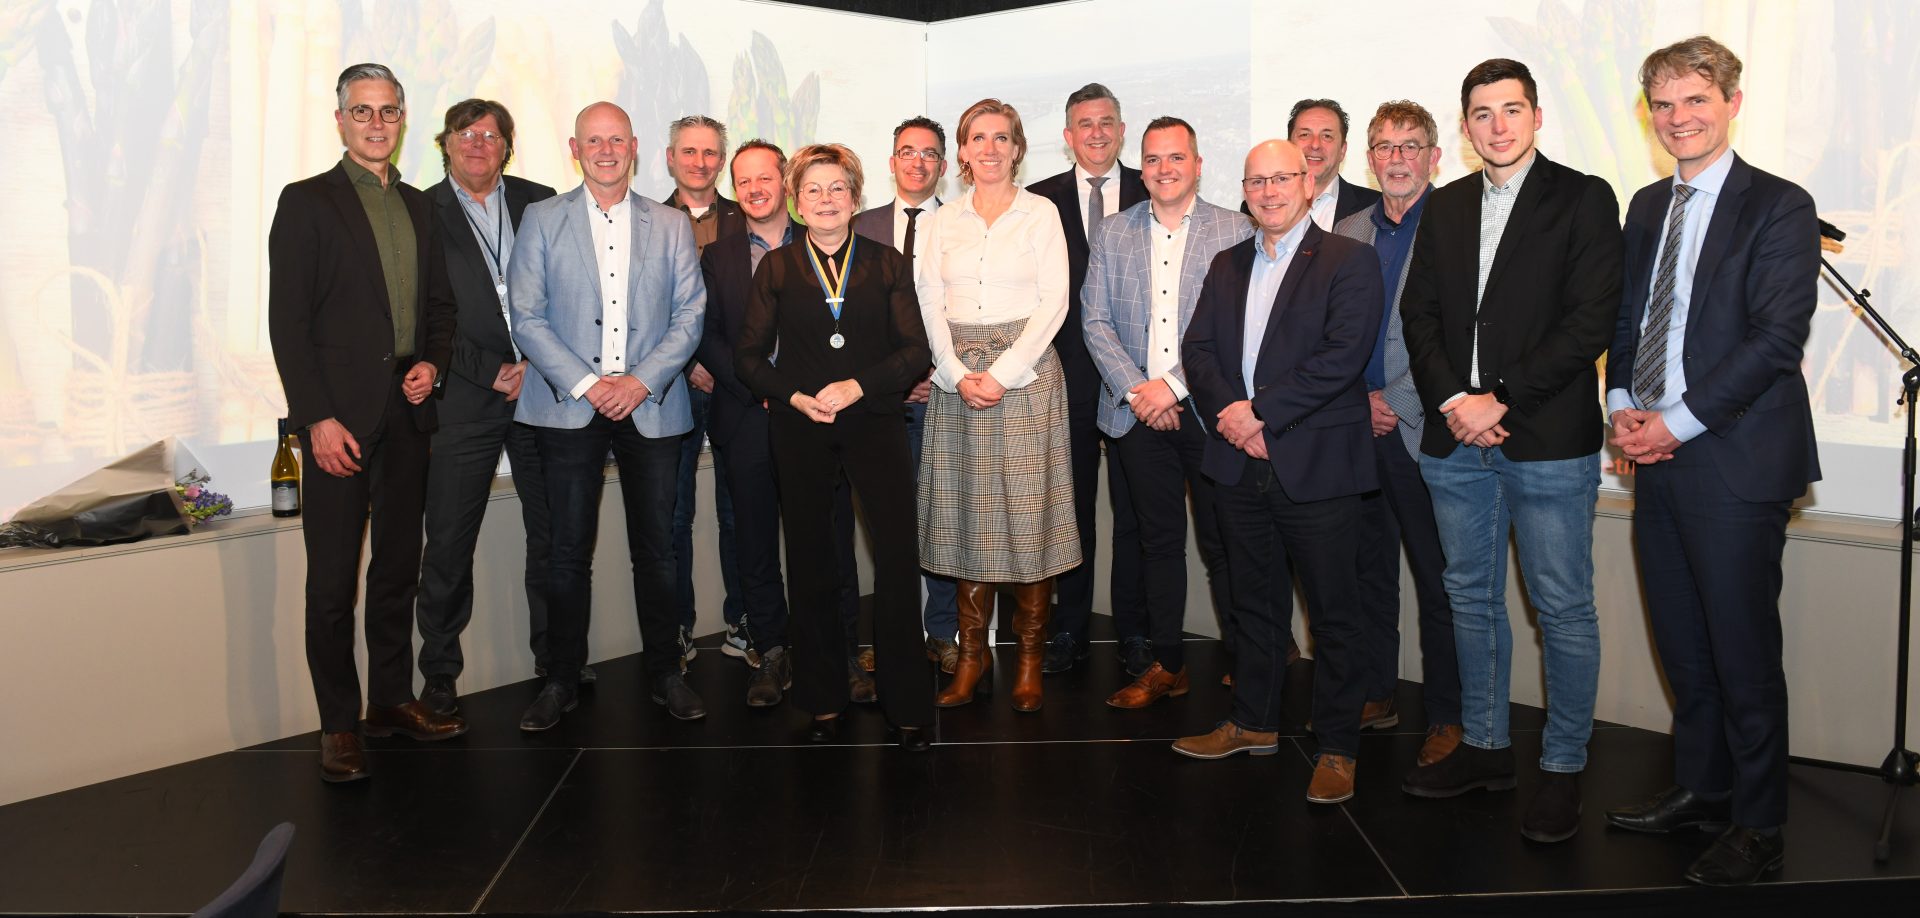 Het bestuur van Aspergegilde Limburg, Gouverneur Emile Roemer, Burgemeester Delissen en andere prominente Limburgse politici tijdens het Aspergediner bij Nieuwspoort in Den Haag